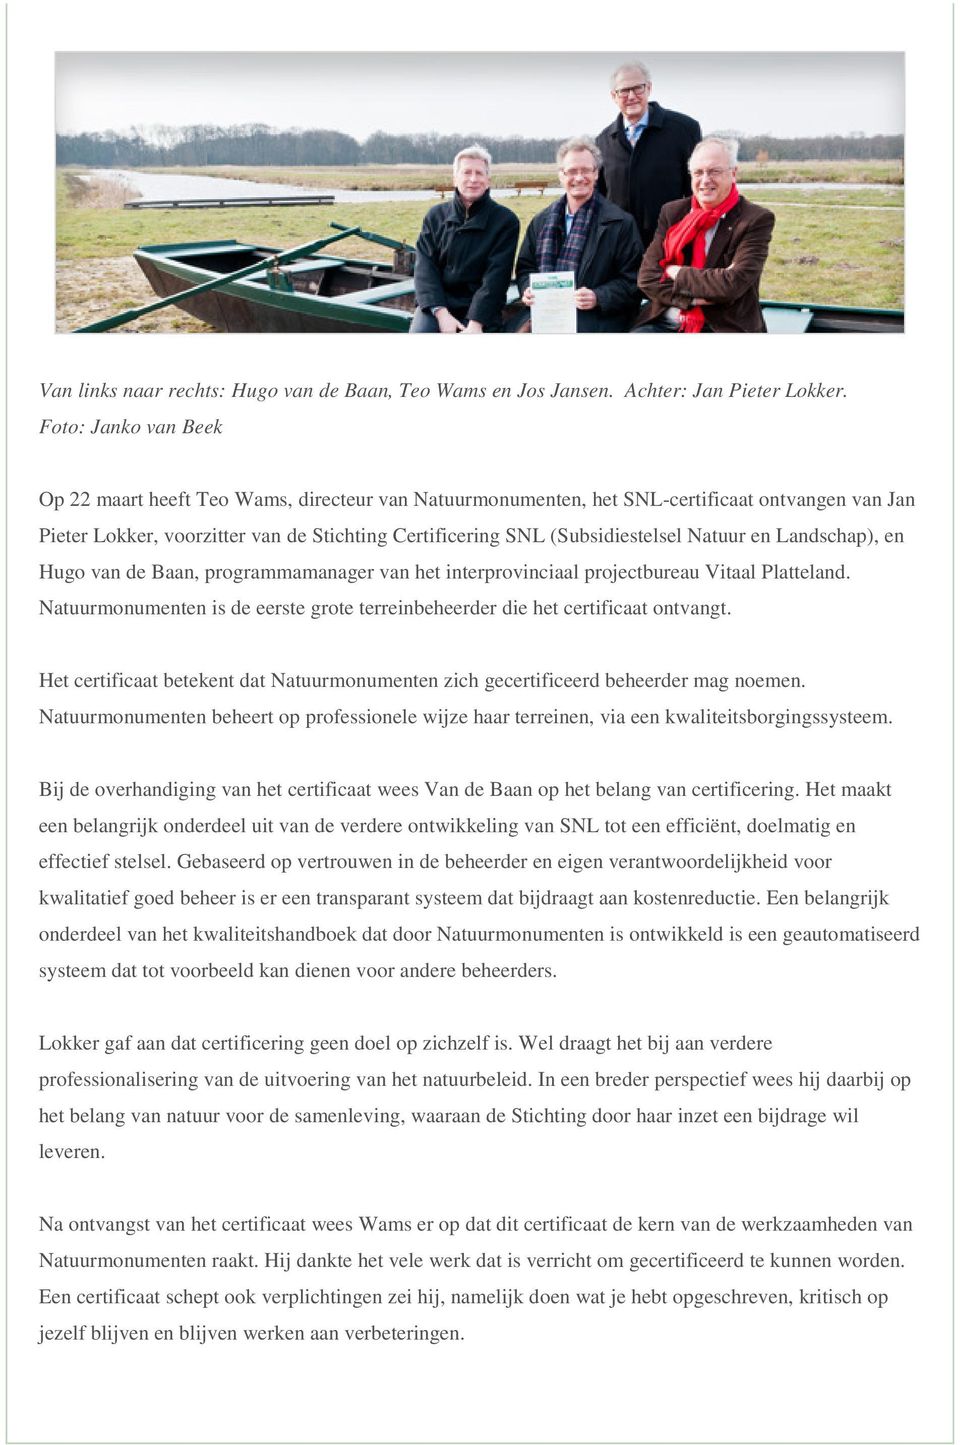 Natuur en Landschap), en Hugo van de Baan, programmamanager van het interprovinciaal projectbureau Vitaal Platteland. Natuurmonumenten is de eerste grote terreinbeheerder die het certificaat ontvangt.